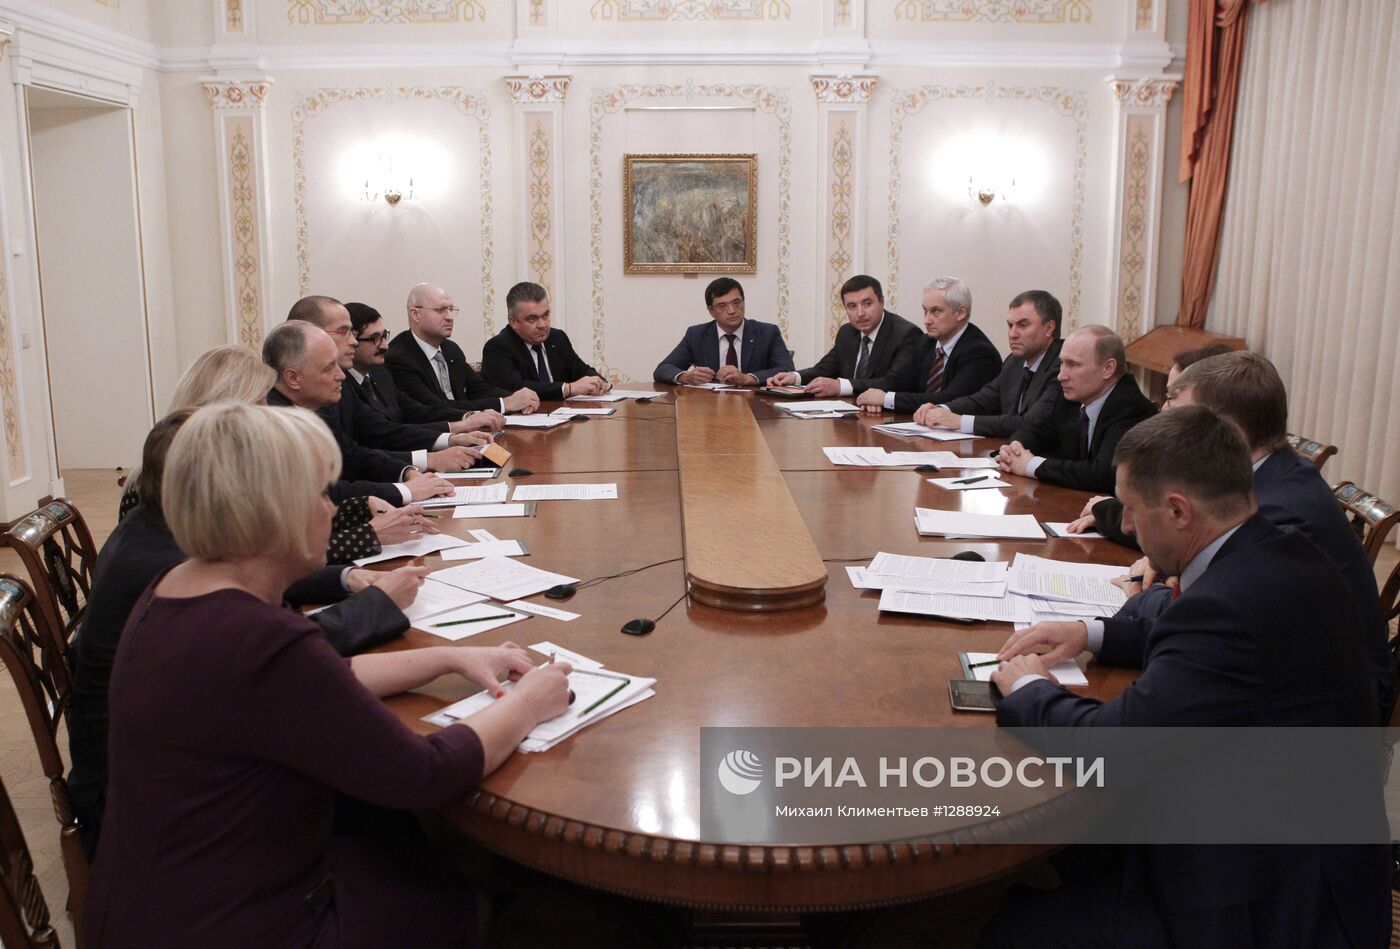 В.Путин на встрече с руководством организации "Опора России"